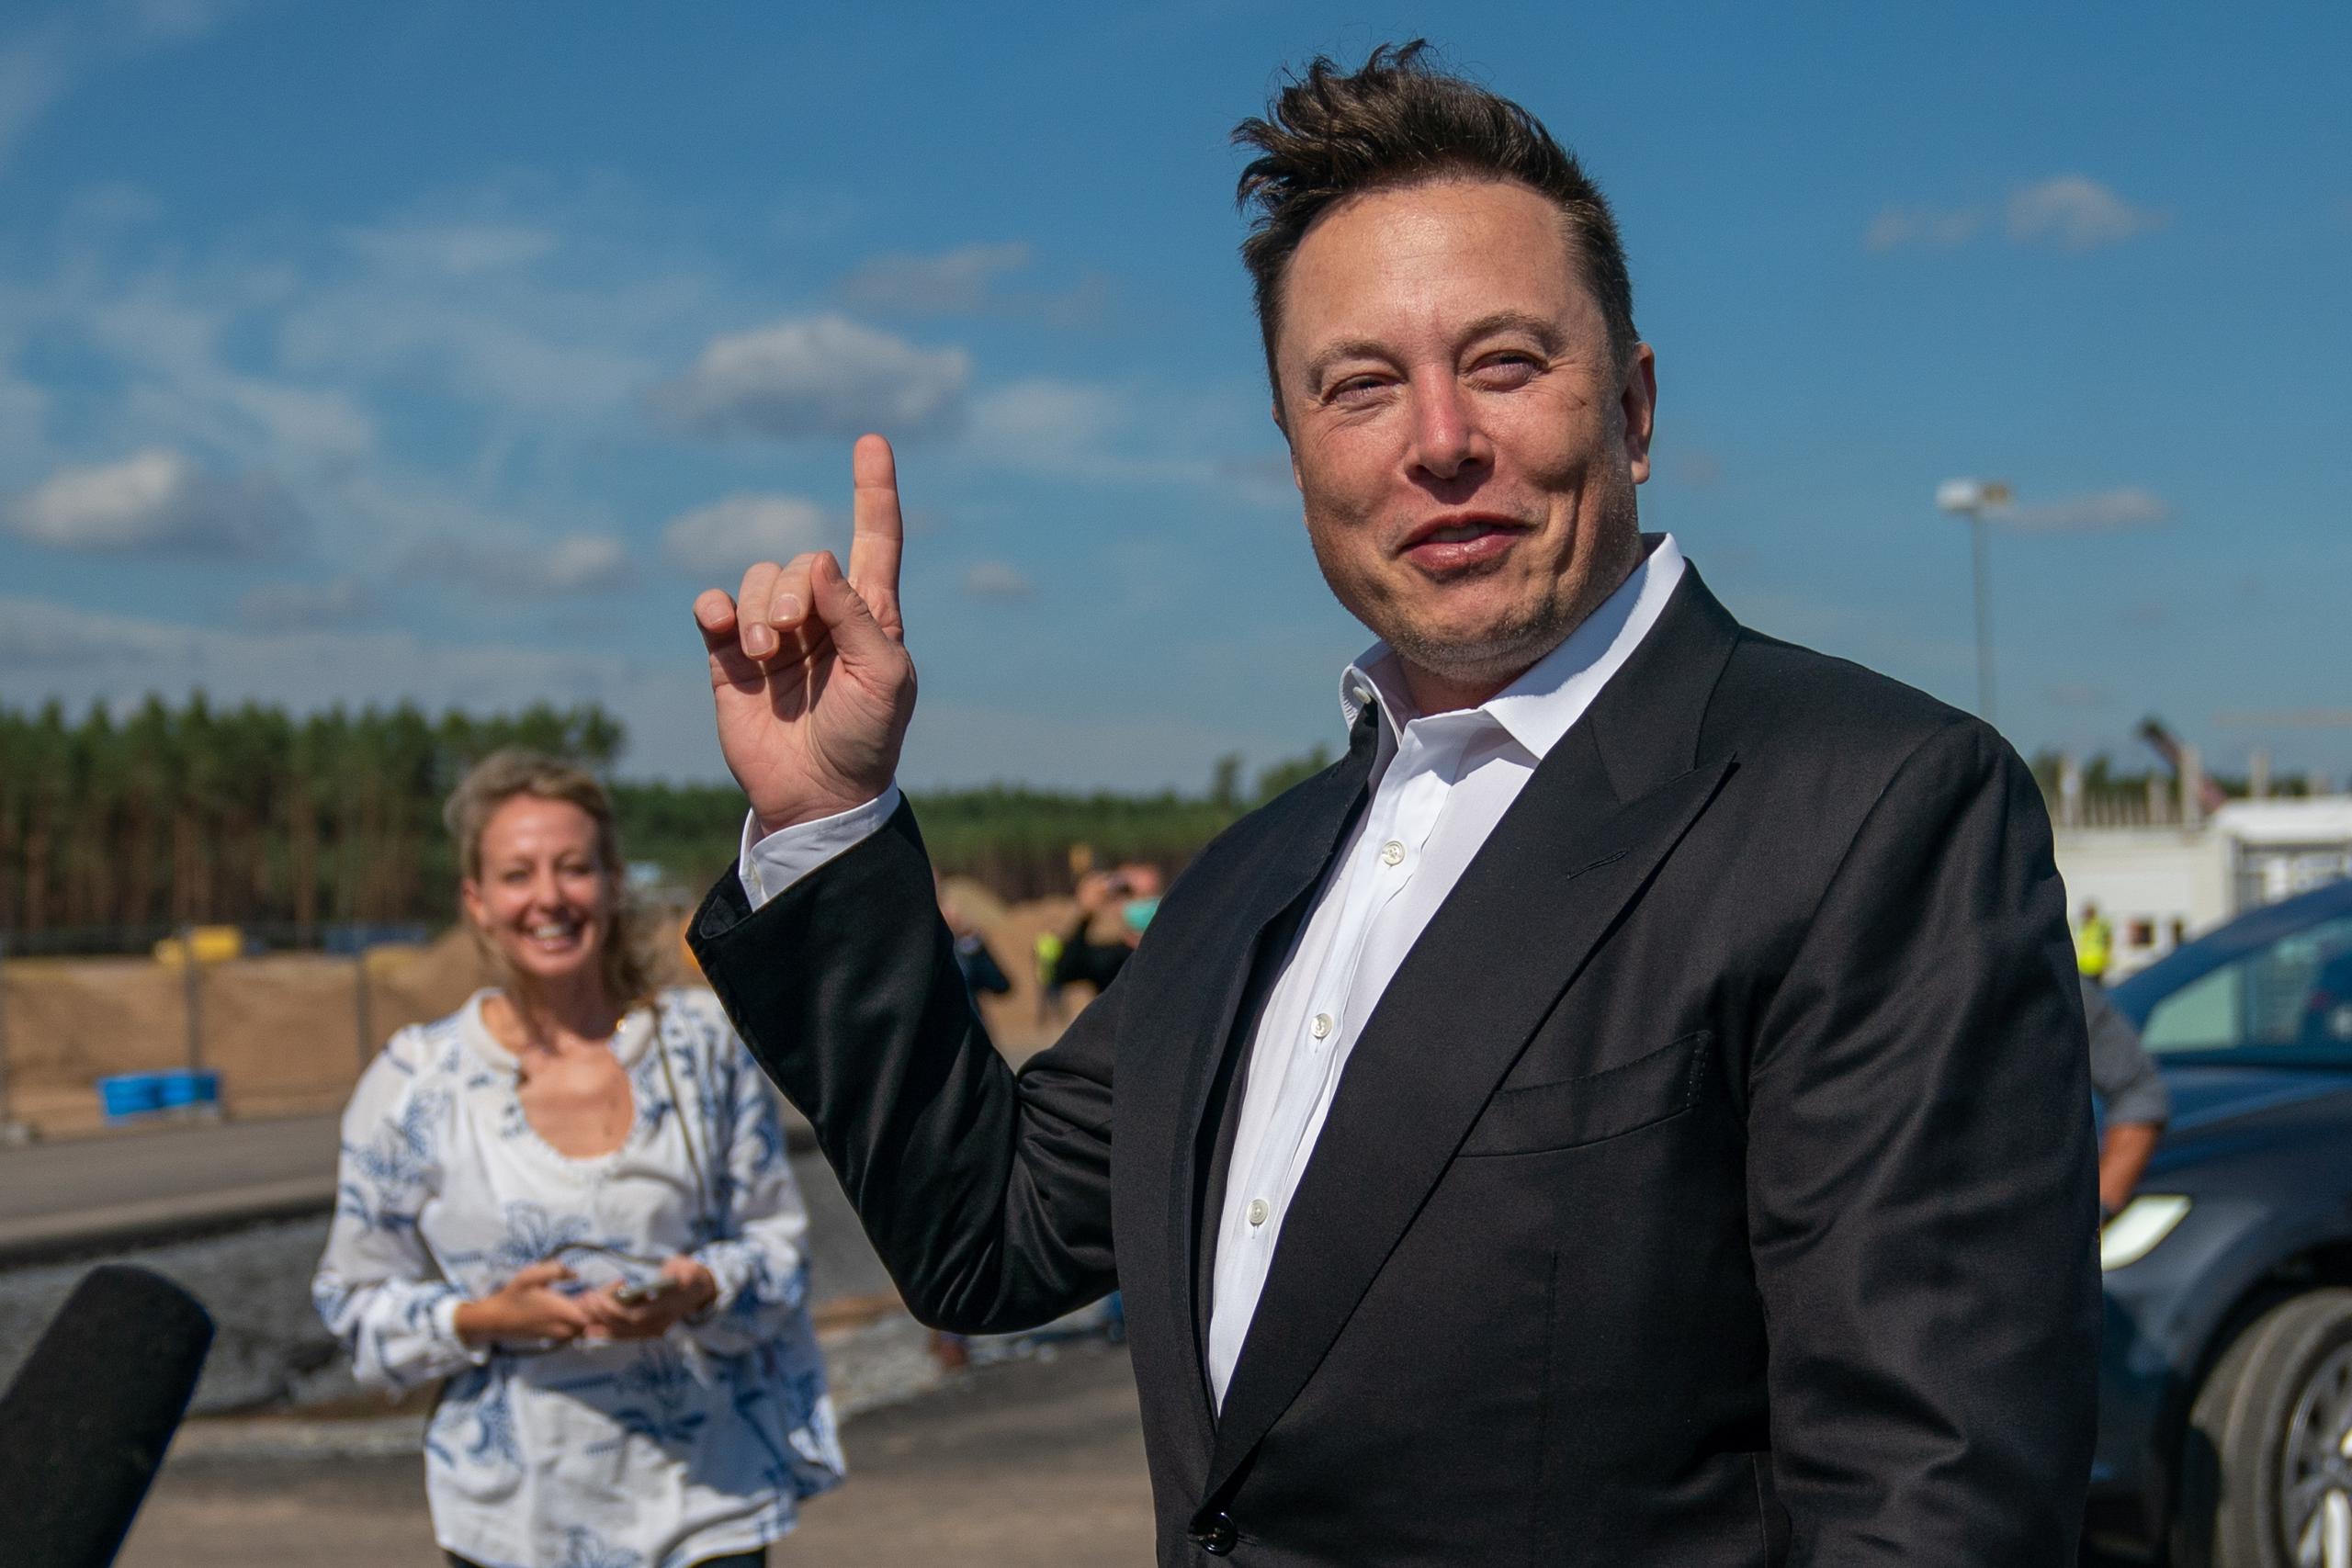 El empresario Elon Musk es el creador del automóvil eléctrico Tesla. (EFE/EPA/Alexander Becher)